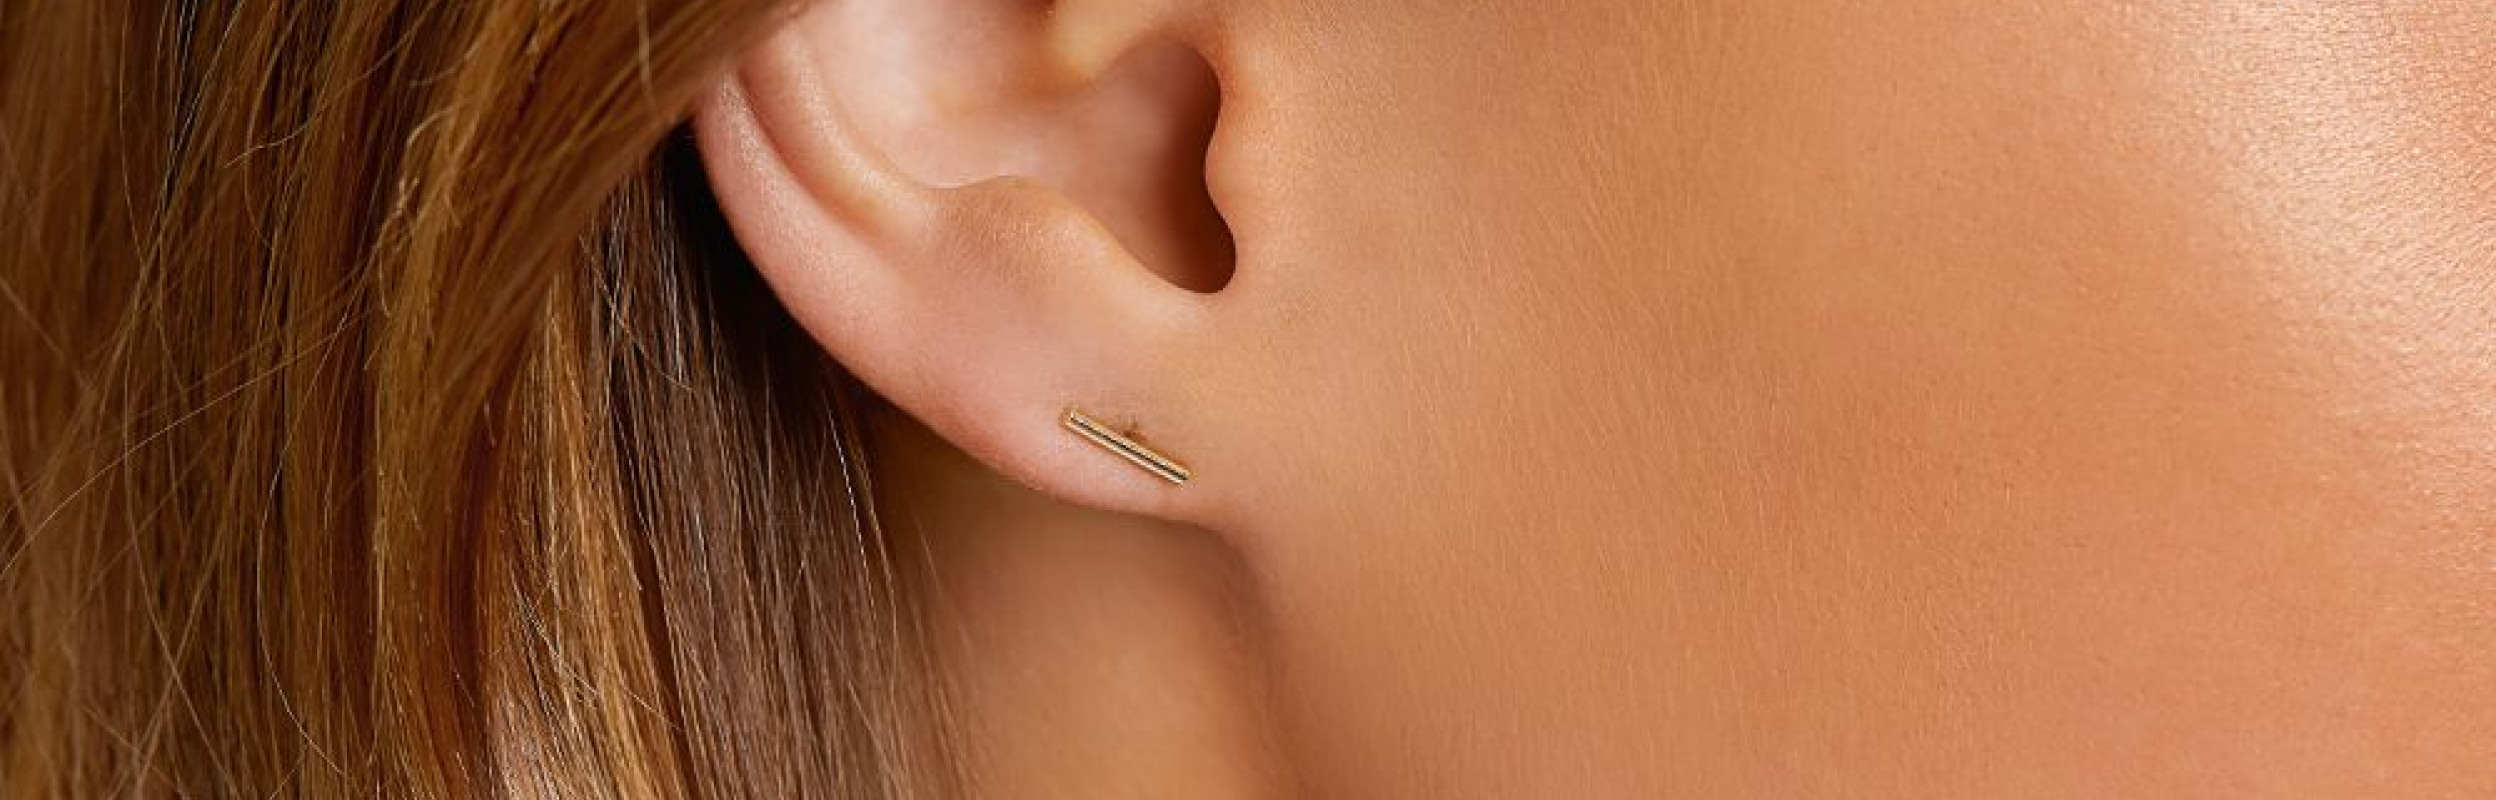 gold bar earring in earlobe